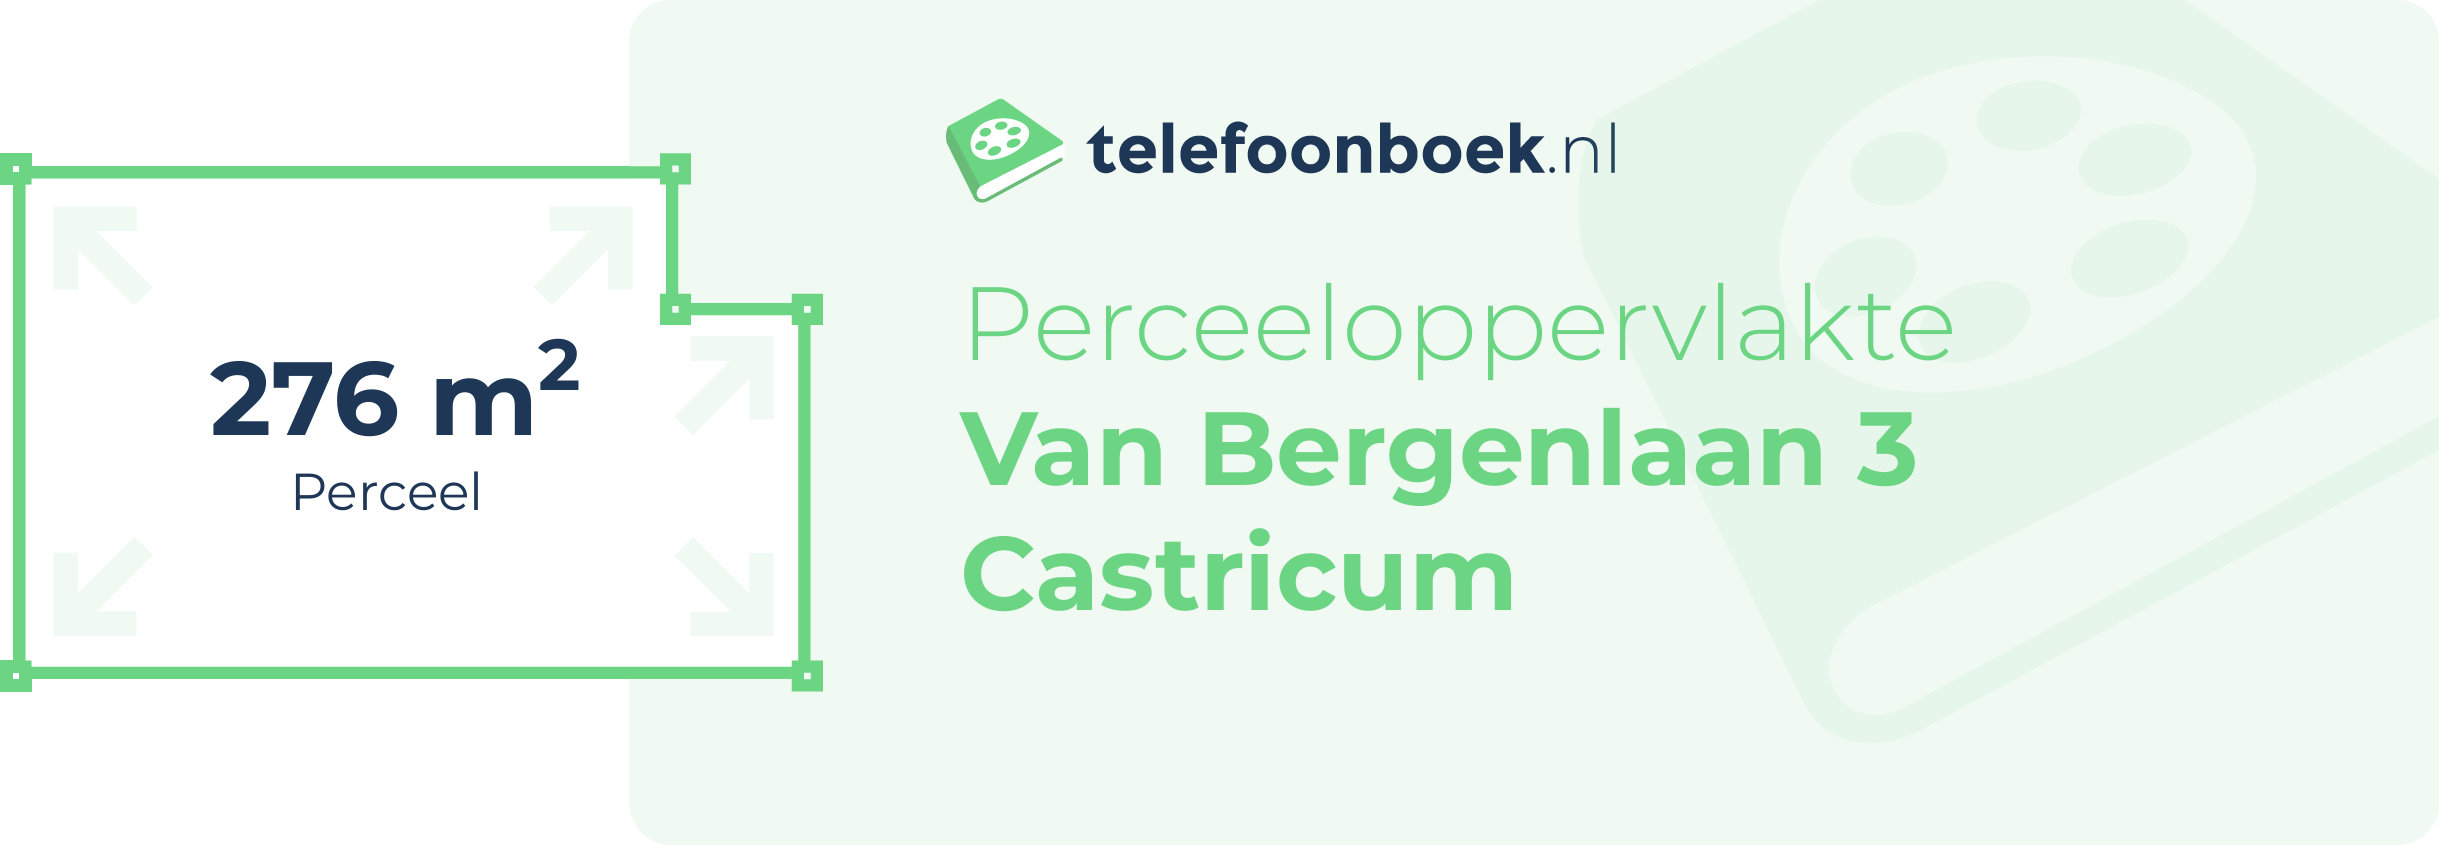 Perceeloppervlakte Van Bergenlaan 3 Castricum